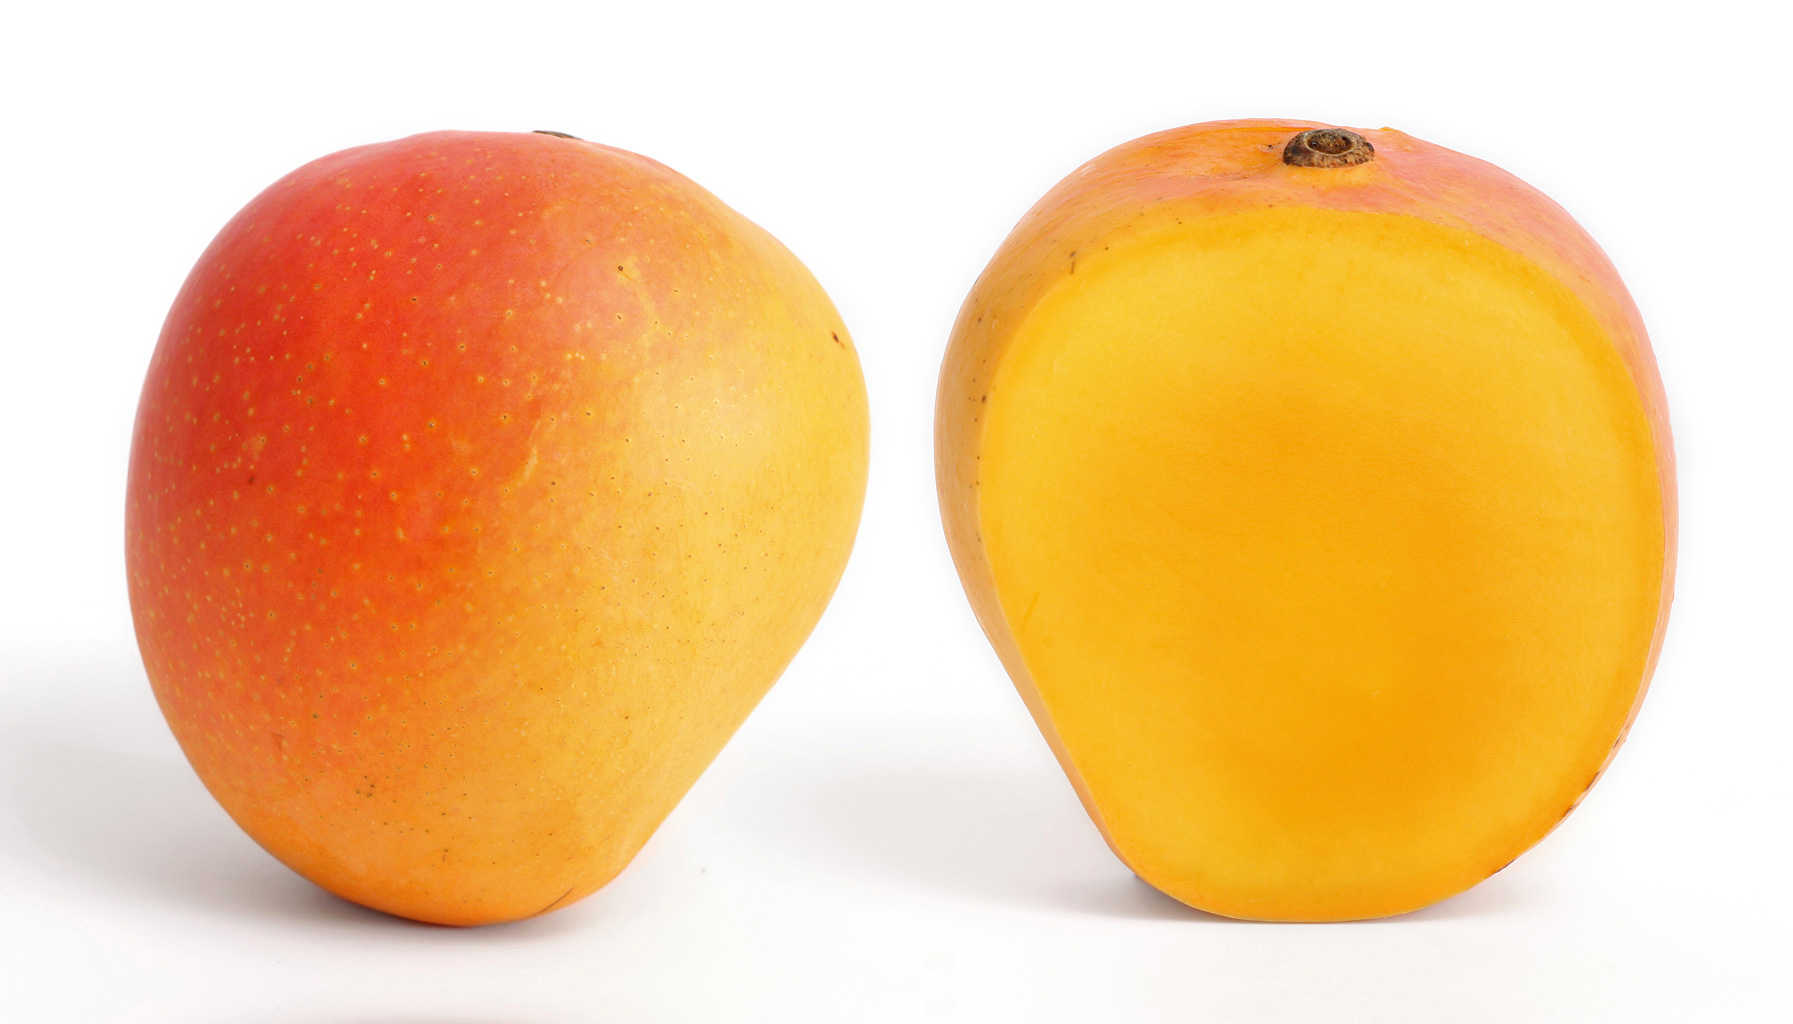 Mango and its longitudinal section